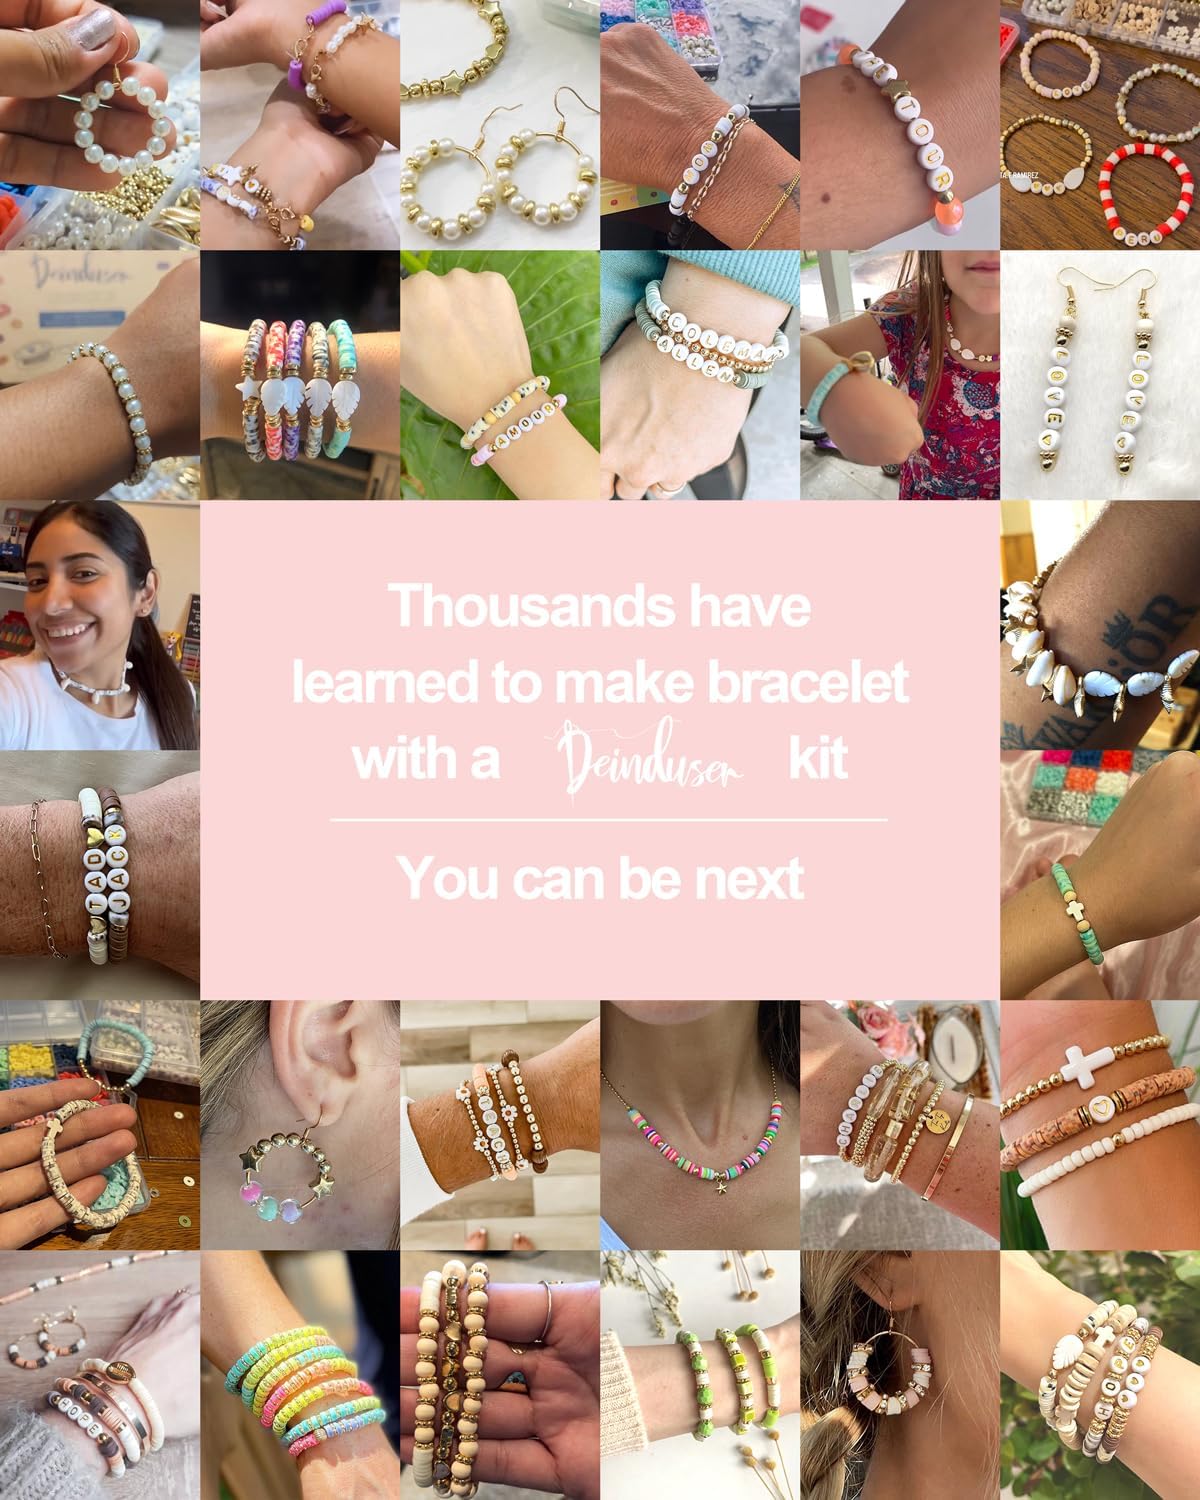 Dowsabel Clay Beads Bracelet Making Kit for Beginner, 5000Pcs